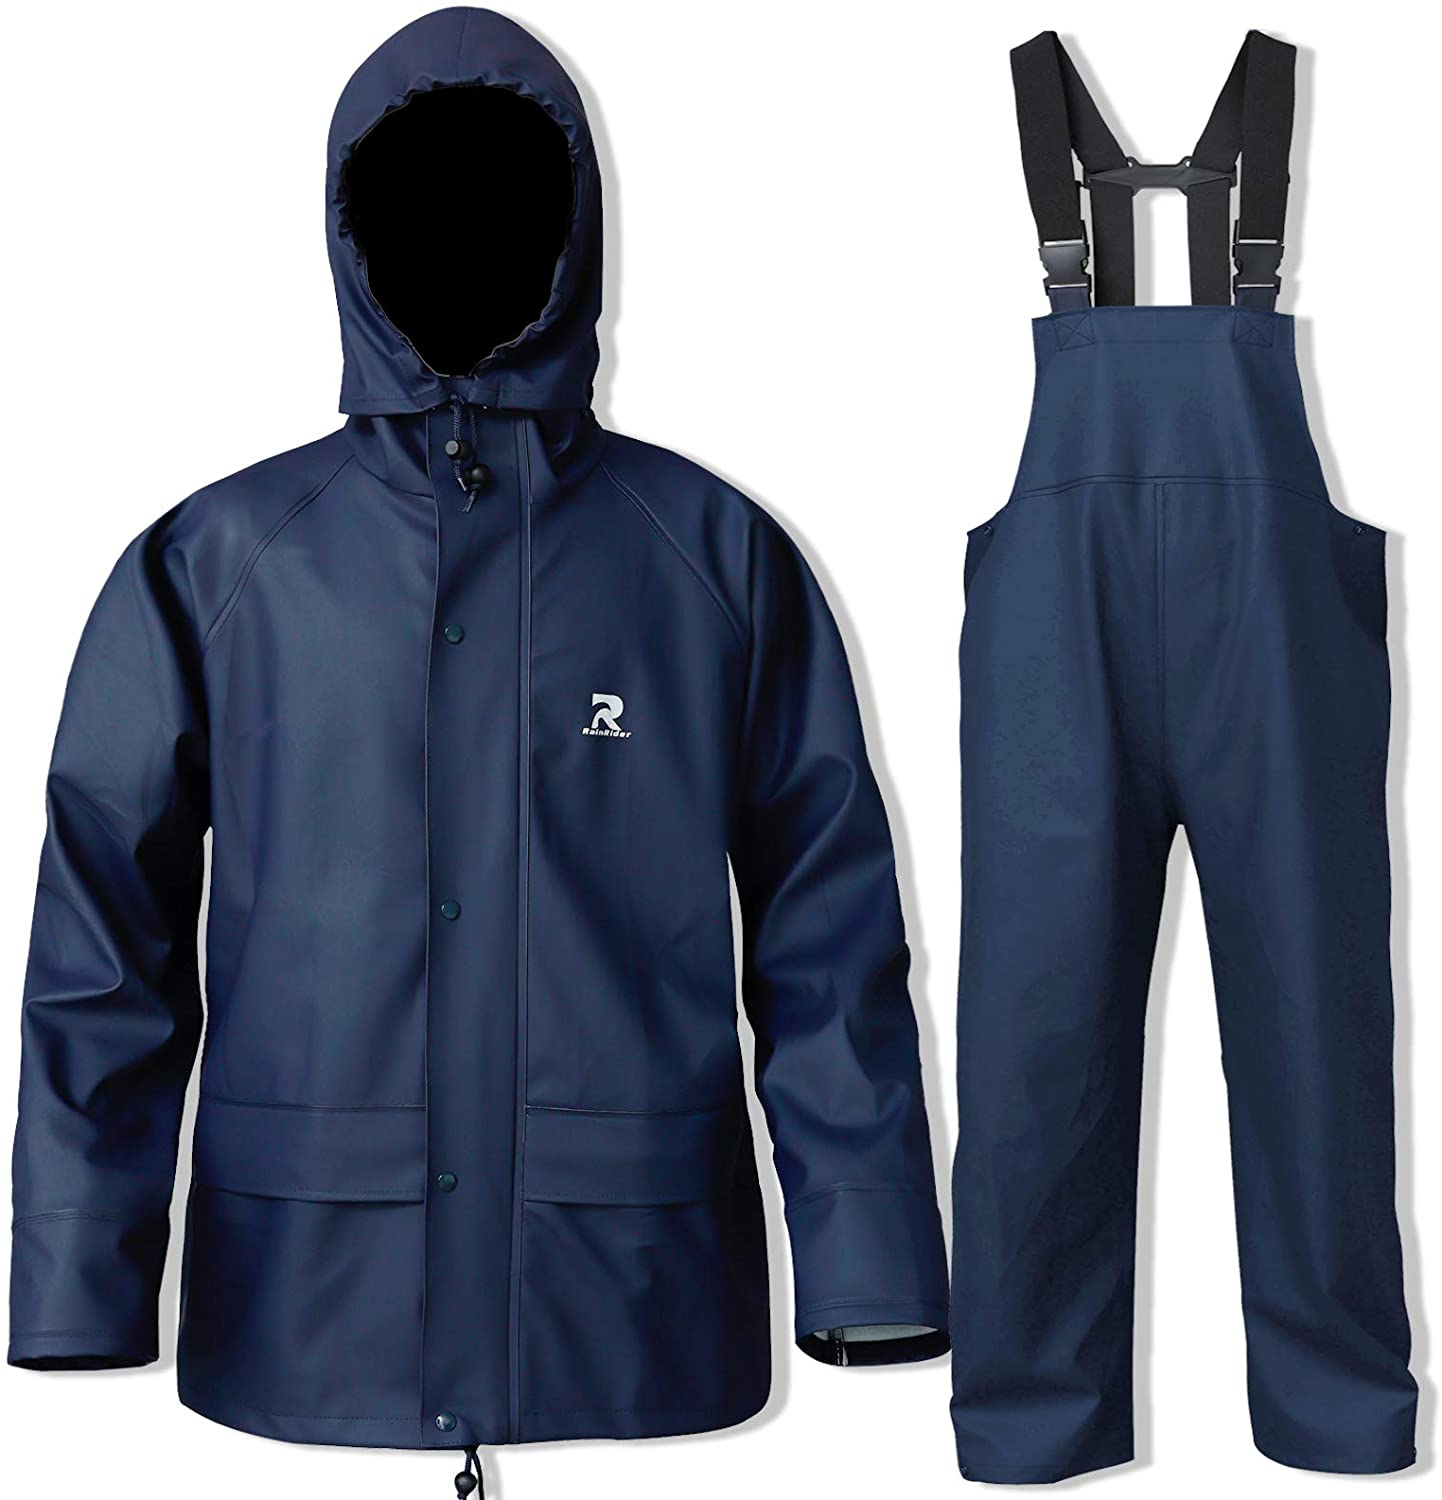 Waterproof Rain Suits Heavy Duty Raincoat Fishing Rain Gear Jacket Men